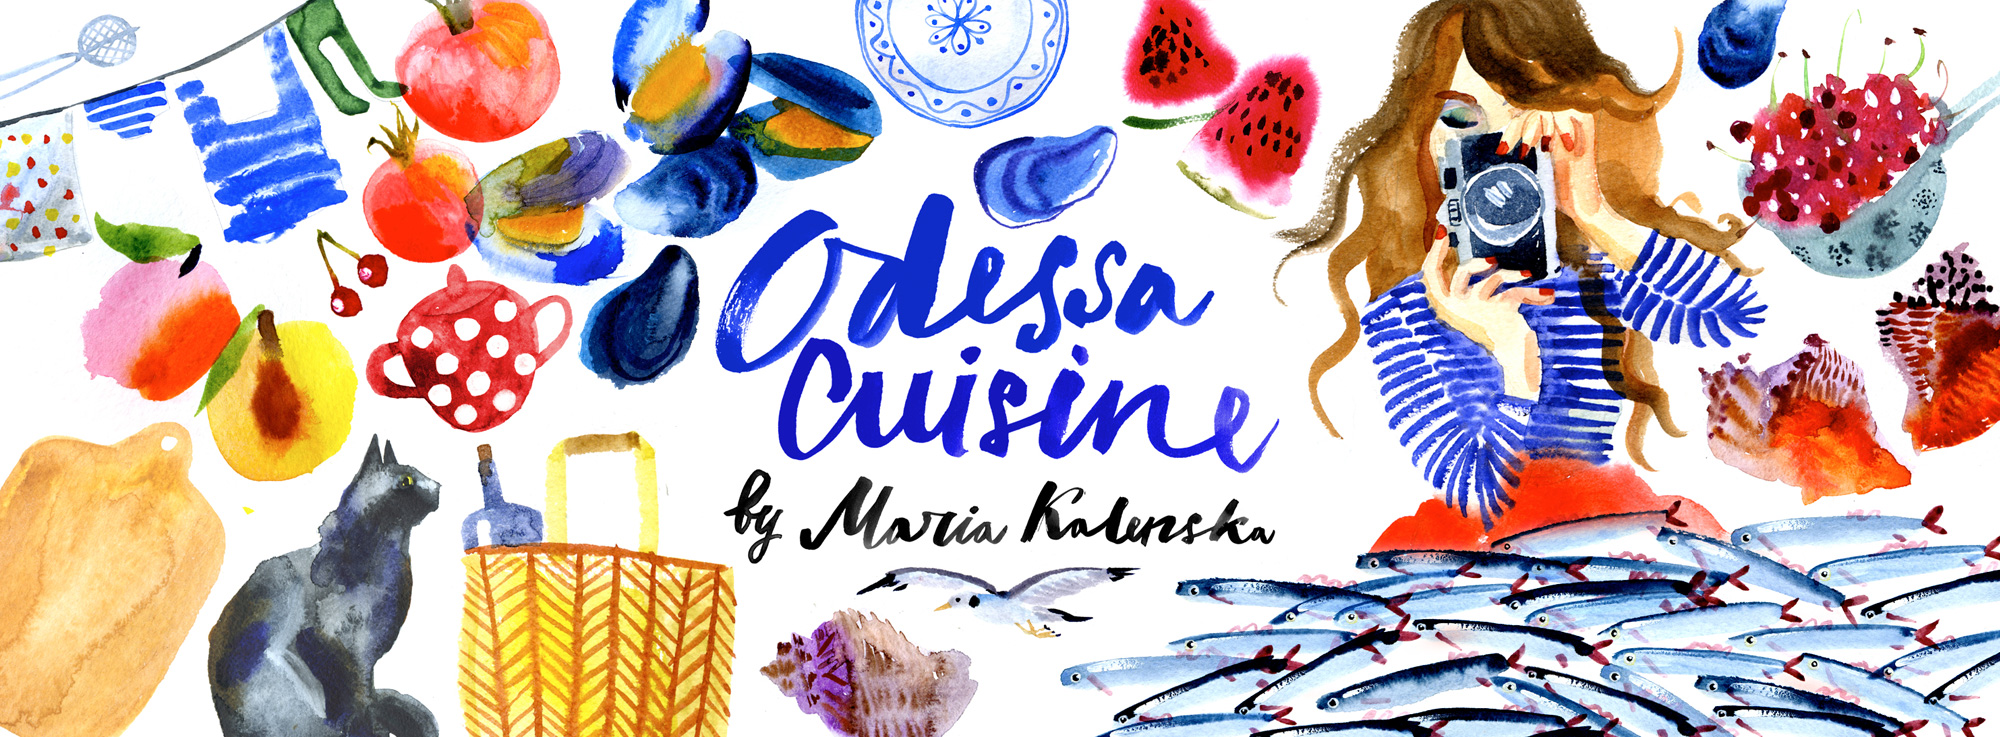 The Culinary blog of Maria Kalenskaya